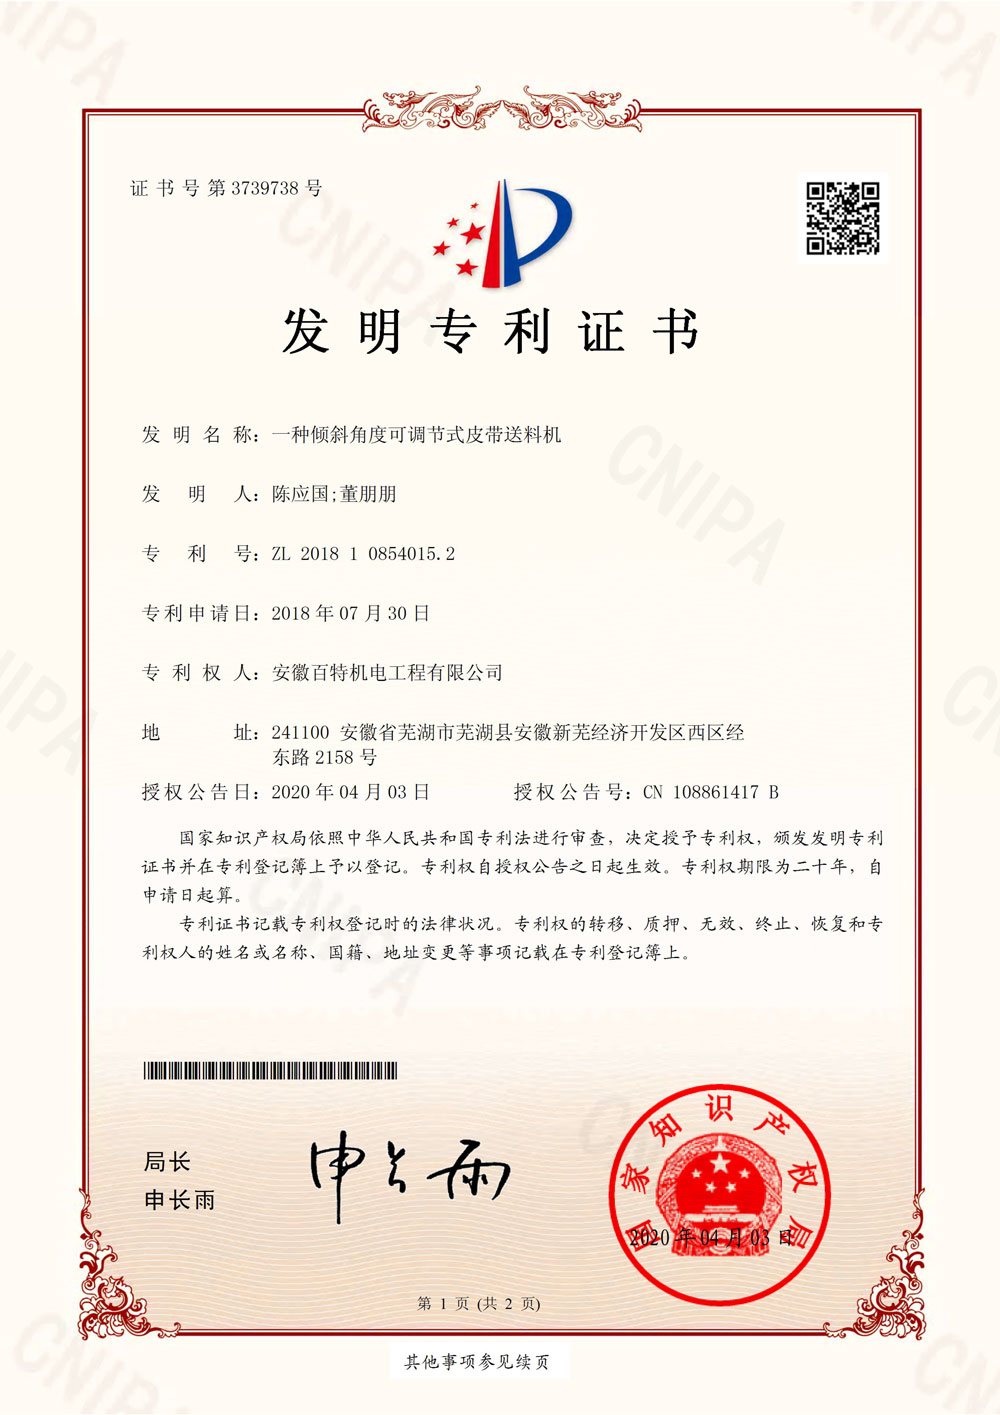 上海百特第7件发明专利证书-1